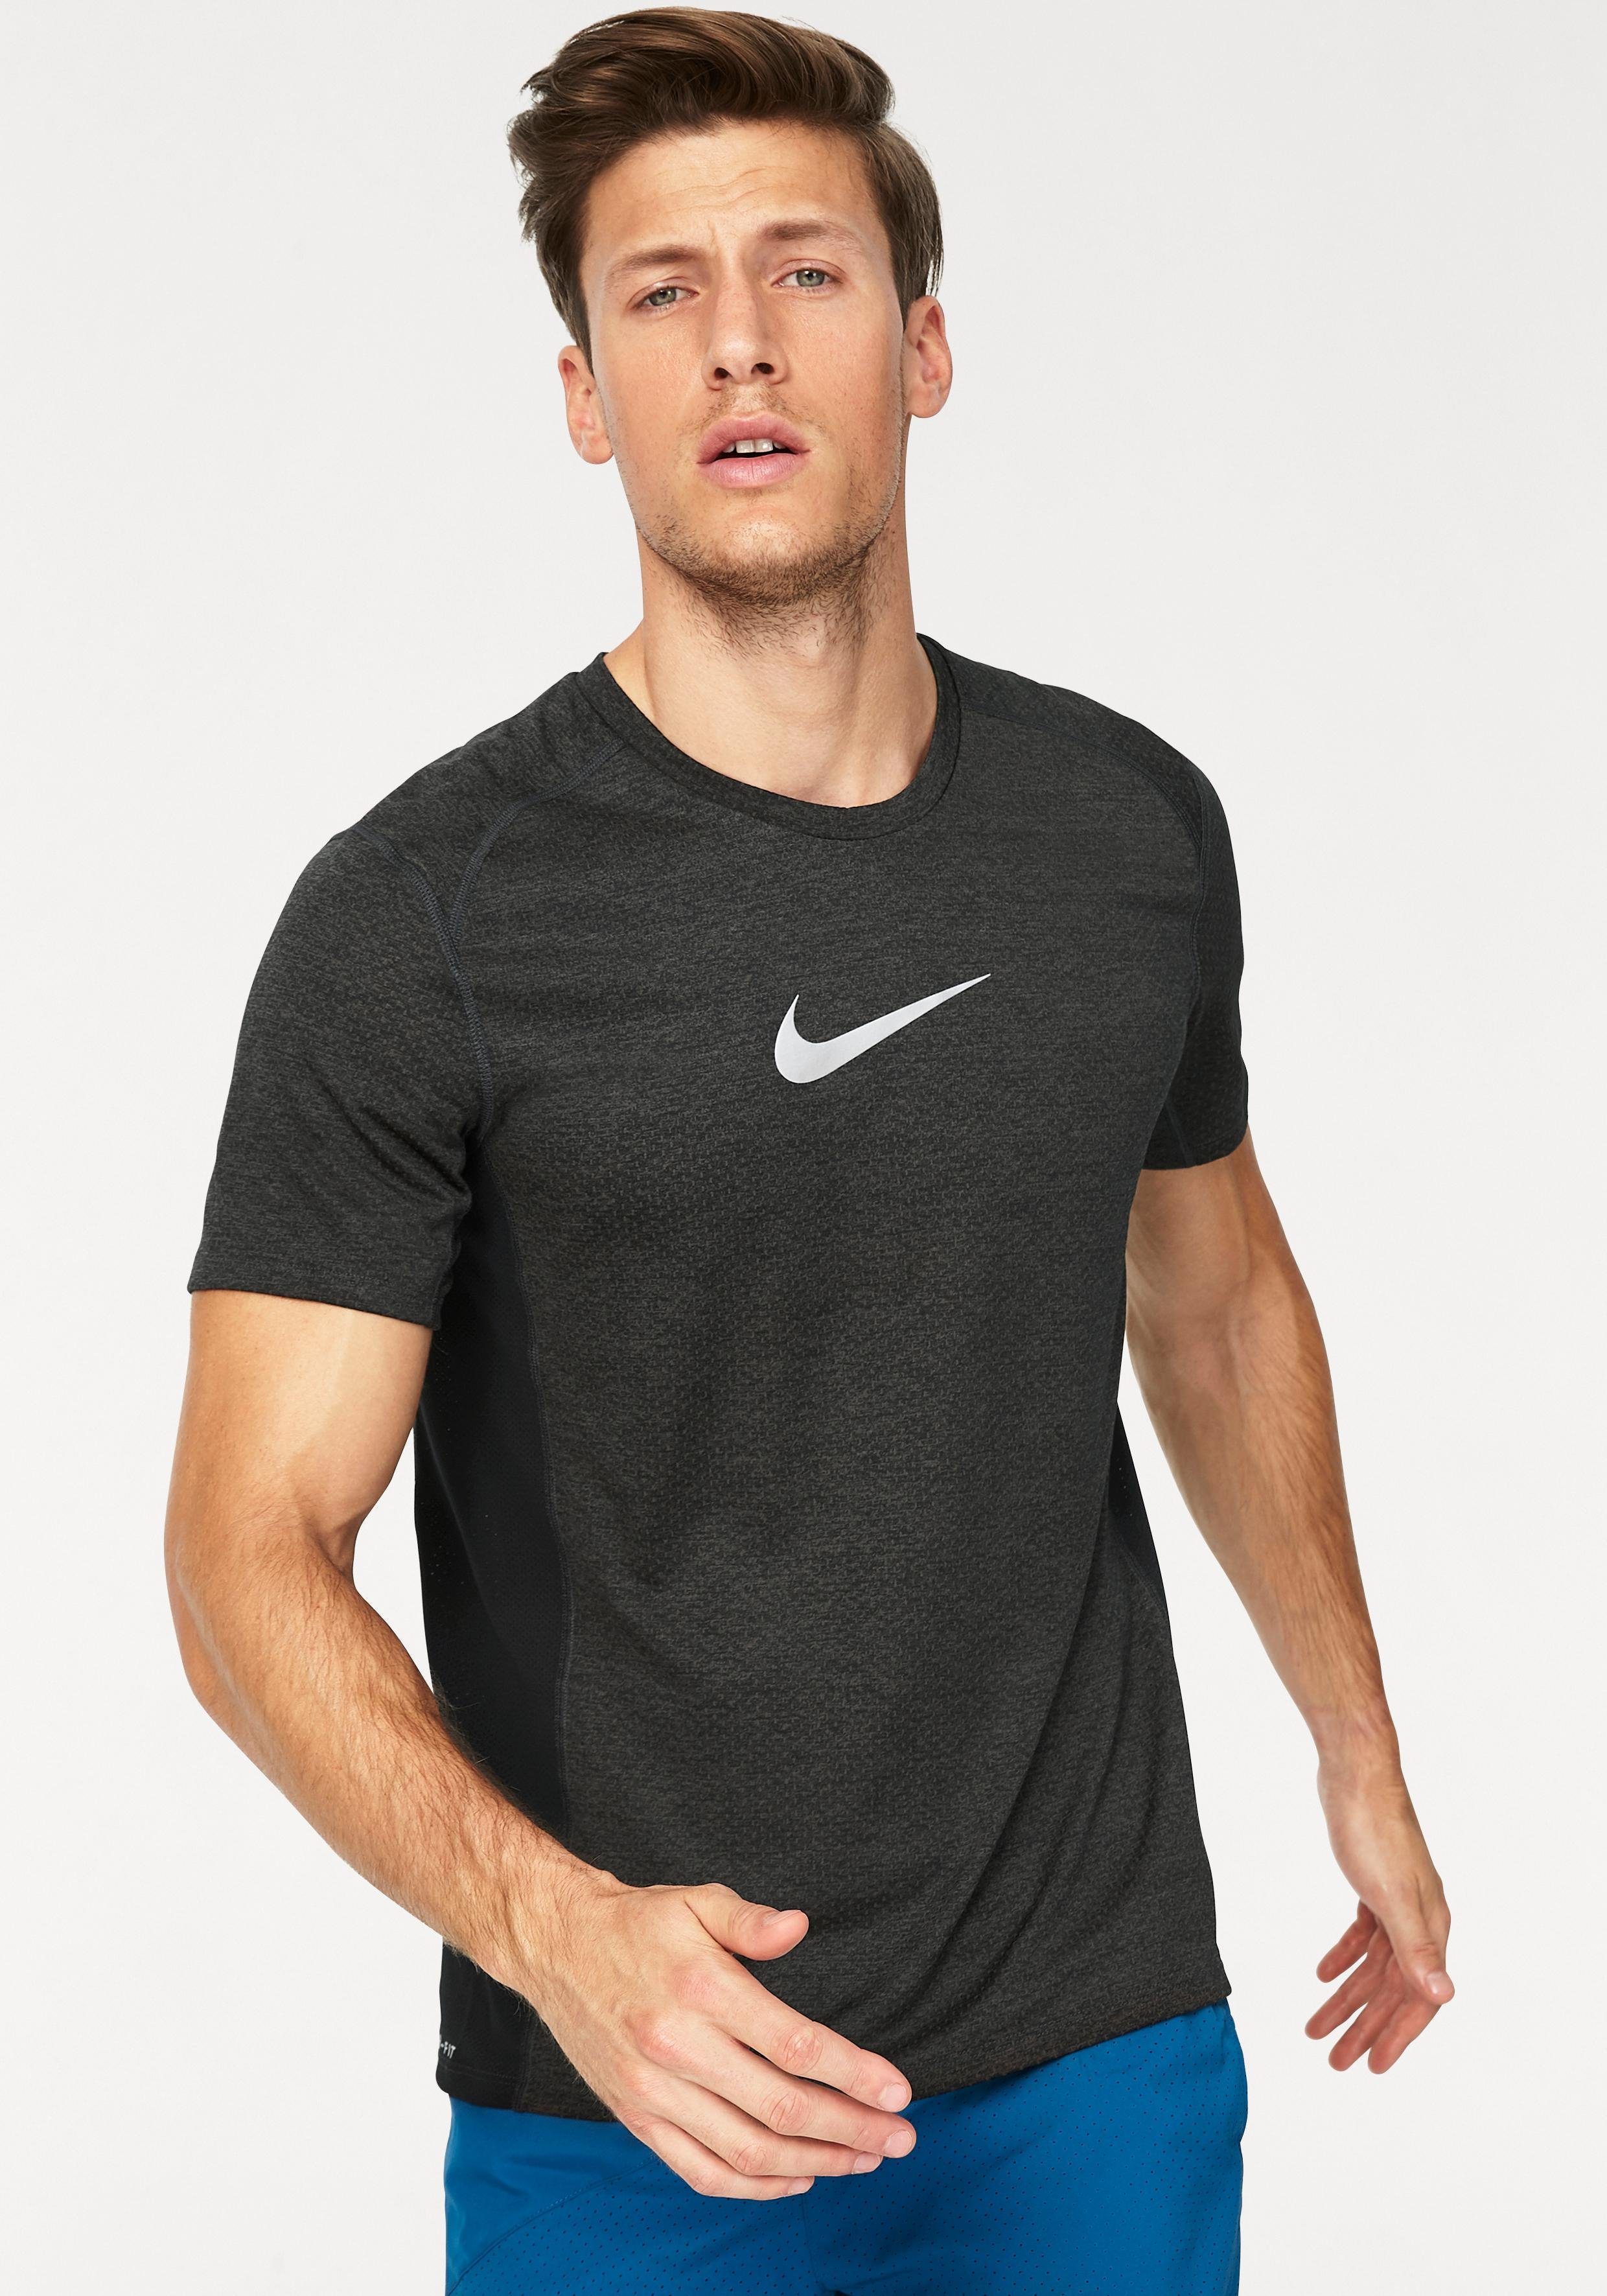 Otto - Nike NU 15% KORTING: NIKE functioneel shirt MEN NIKE BREATHE MILER TOP SHORTSLEEVE COOL